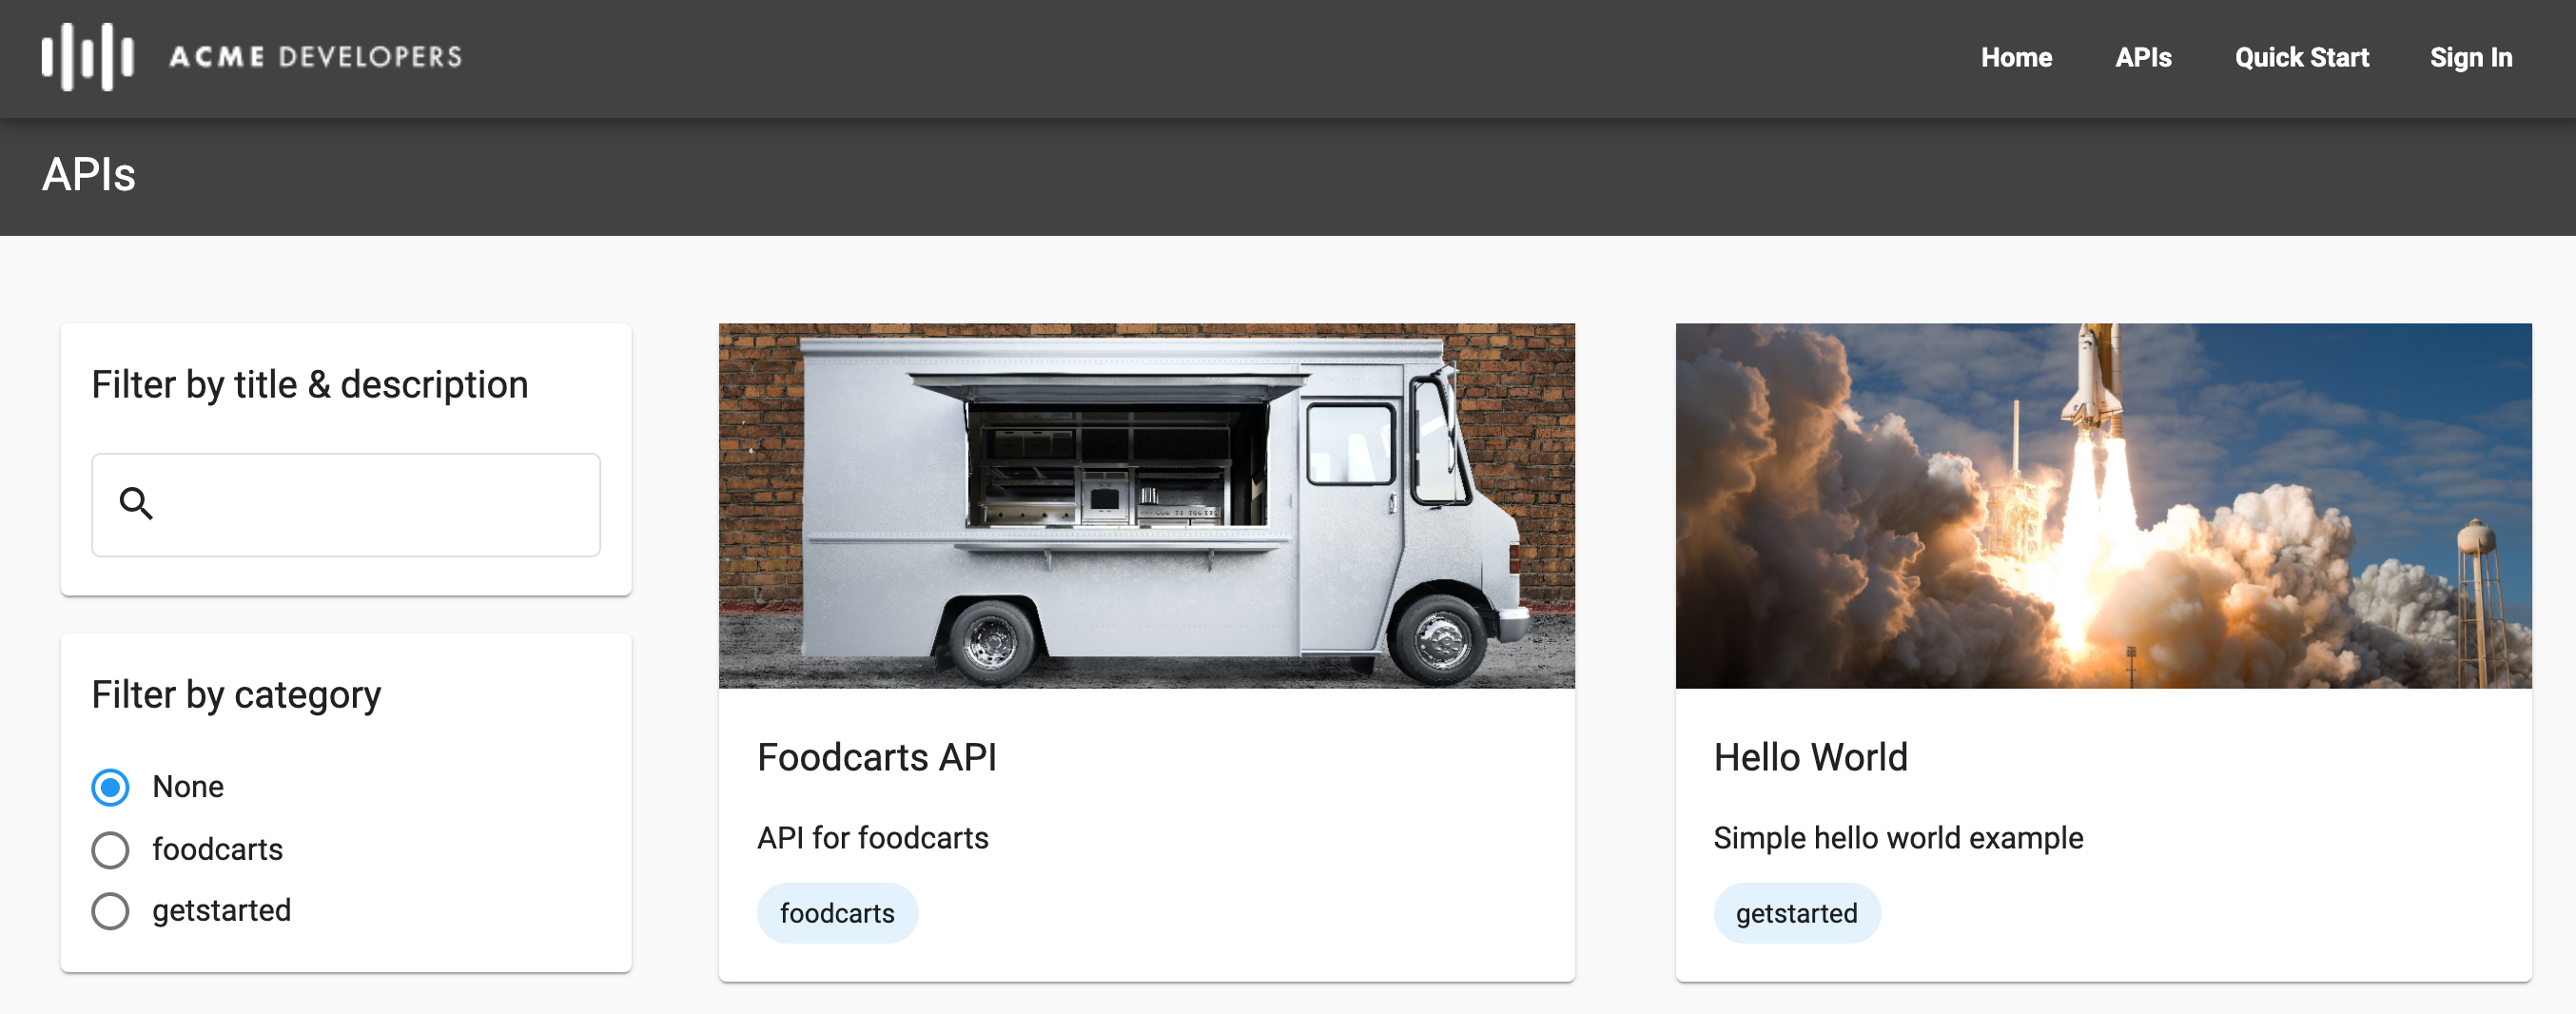 即時入口網站的 API 頁面，其中顯示兩種類別及使用圖片